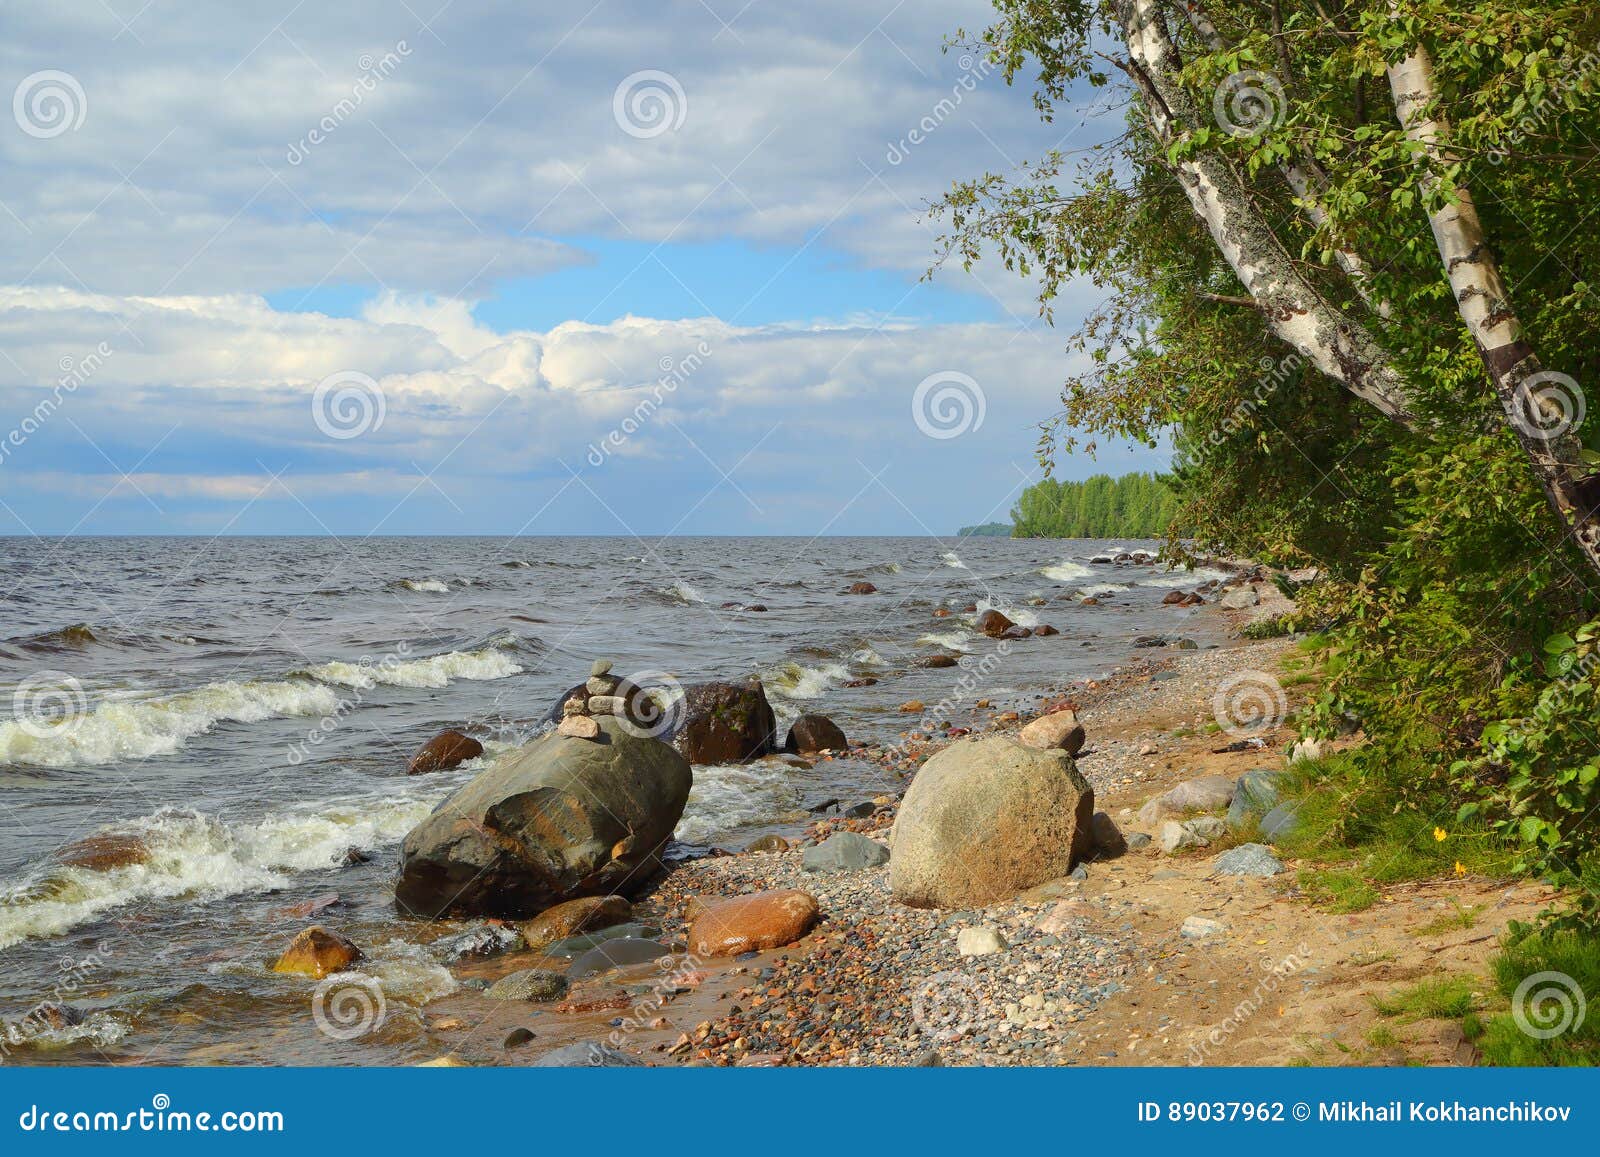 shore of onega lake in karelia